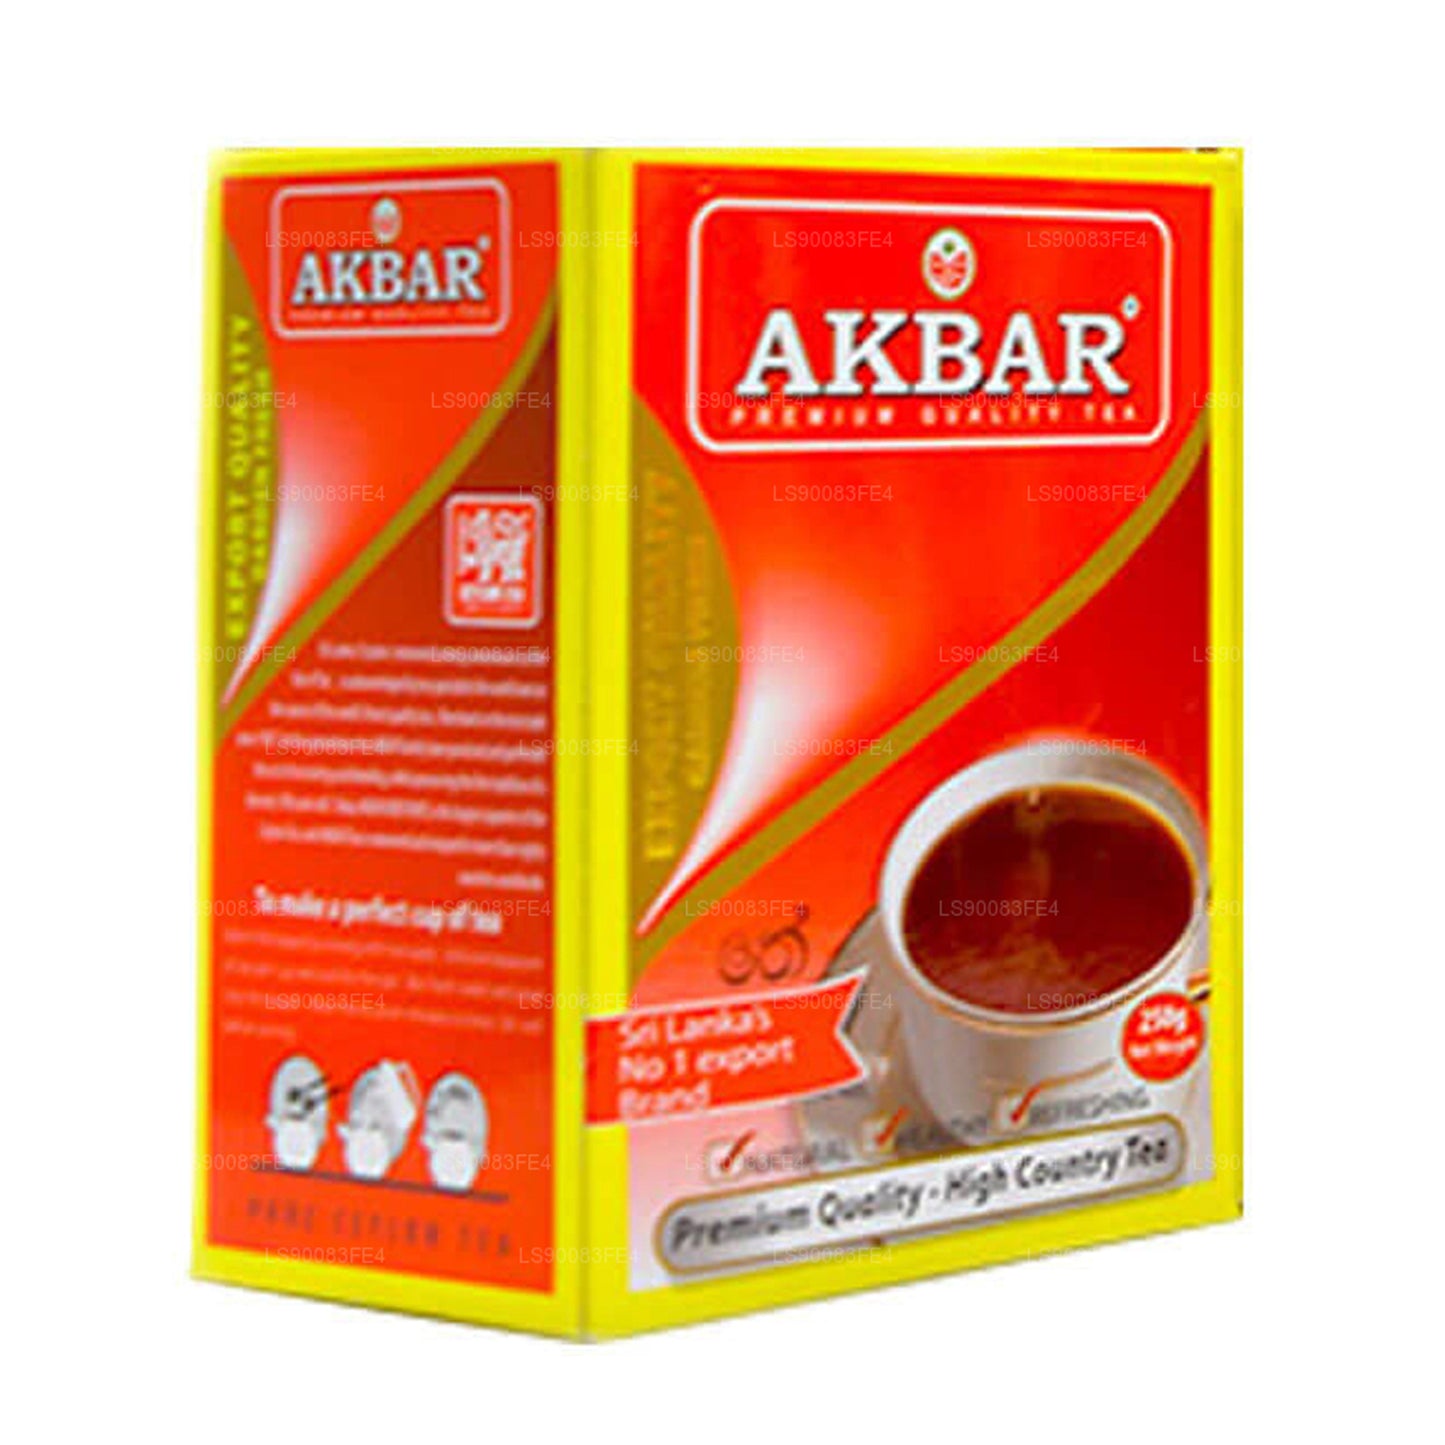 Akbar Premium kvalitet sort te (250g)